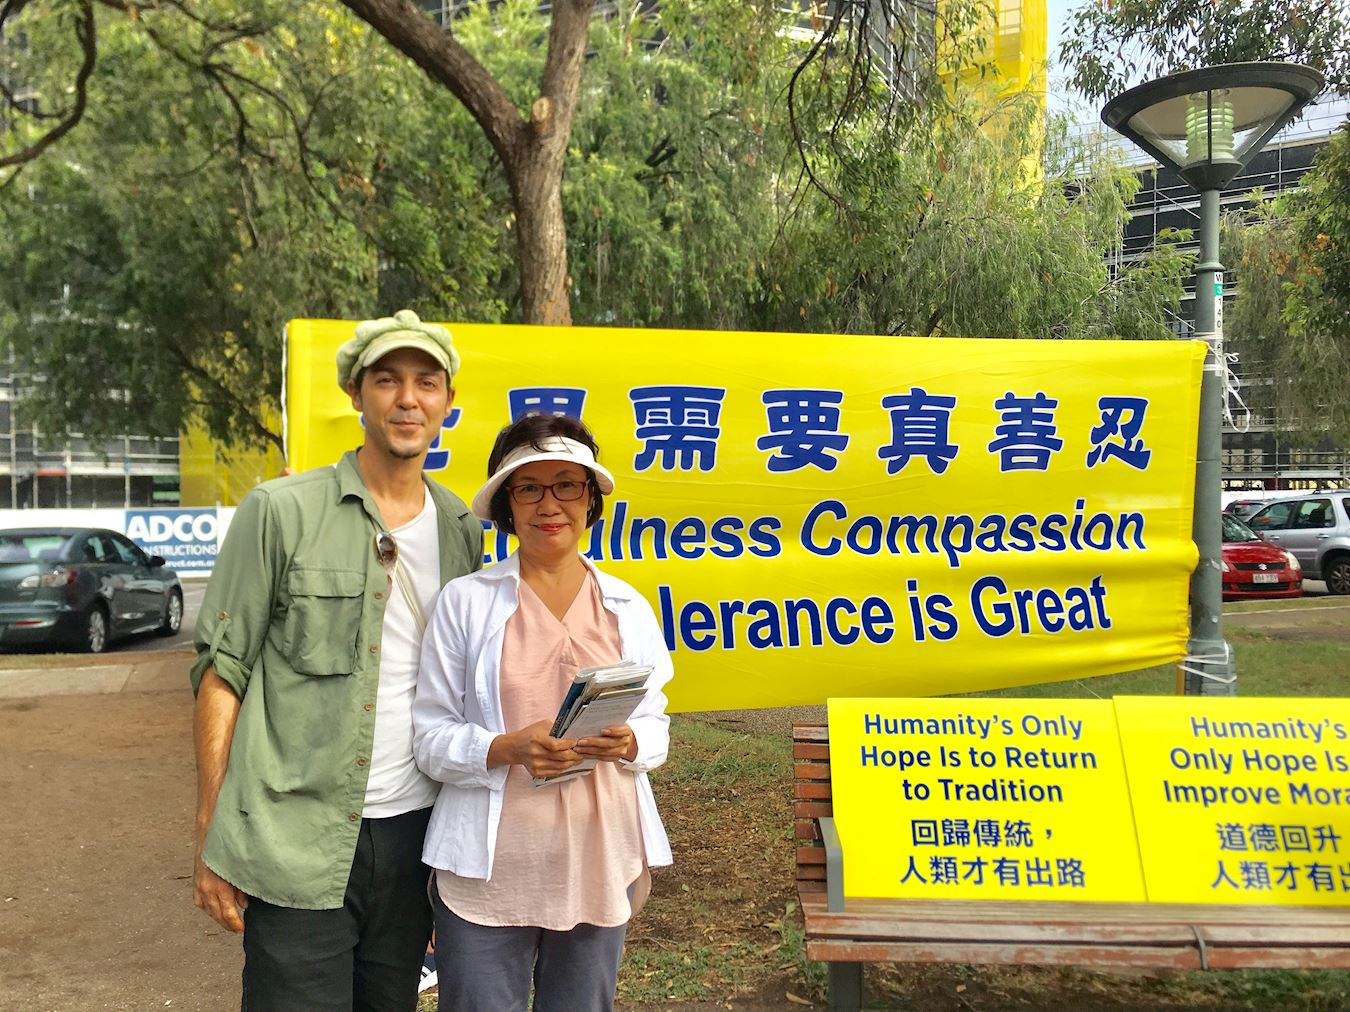 Image for article Brisbane, Australie : Les activités du Falun Dafa sensibilisent les gens dans un quartier commerçant populaire